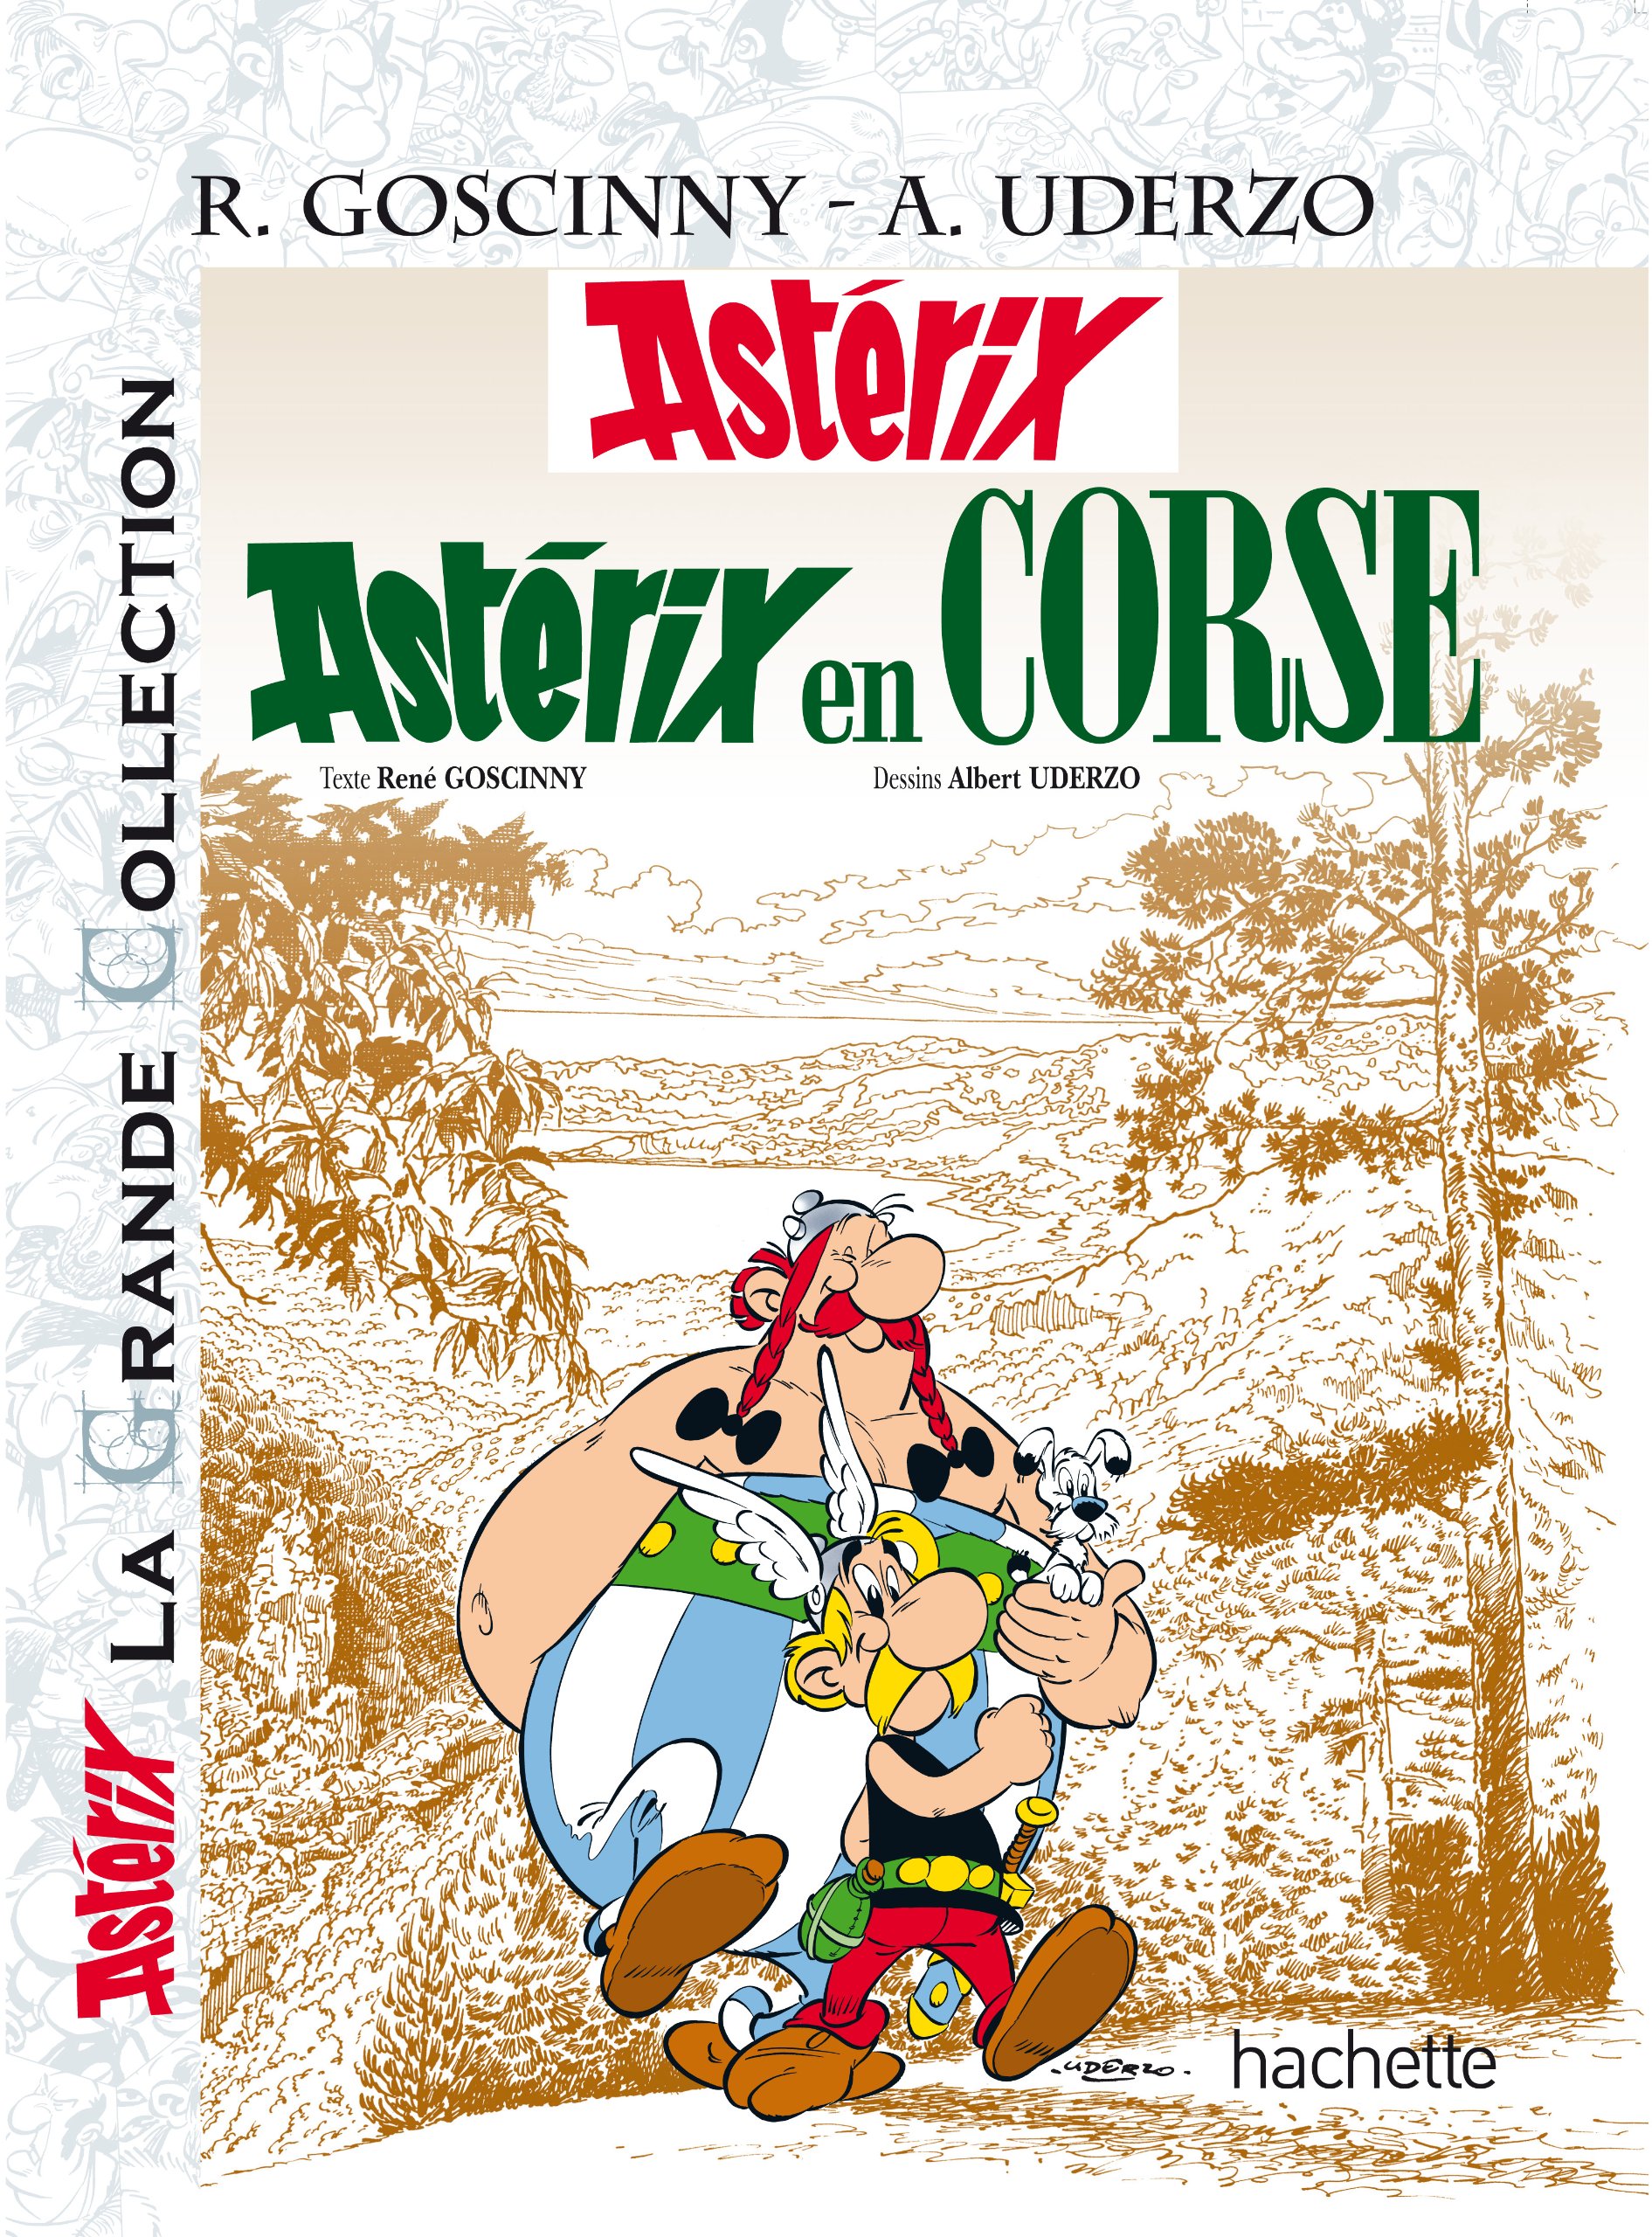 Maquette de couverture pour la collection La Grande Collection (album paru chez Hachette en janvier 2012)